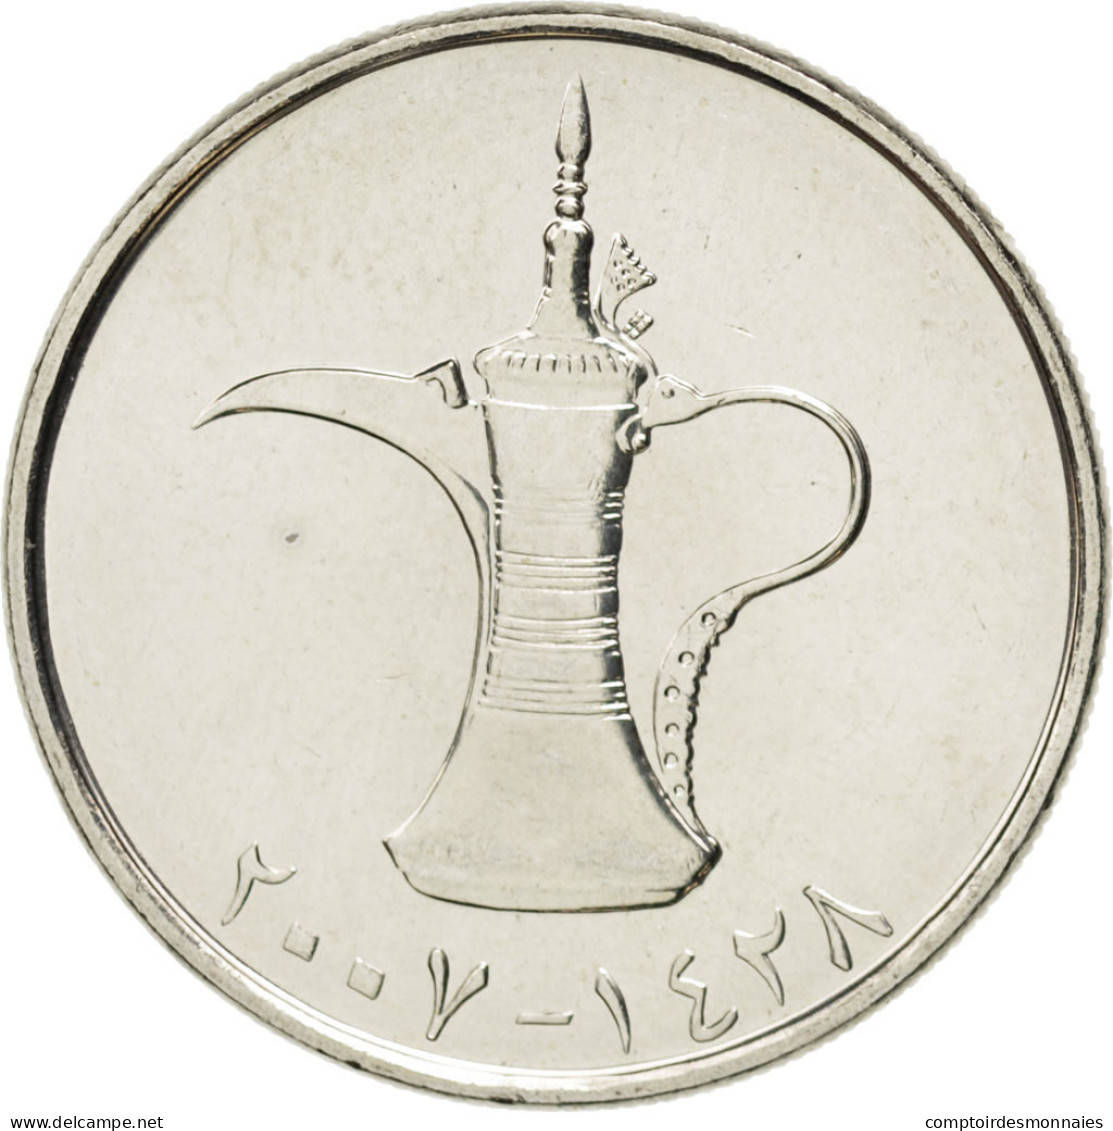 Monnaie, United Arab Emirates, Dirham, 2007, SPL, Copper-nickel, KM:6.2 - United Arab Emirates